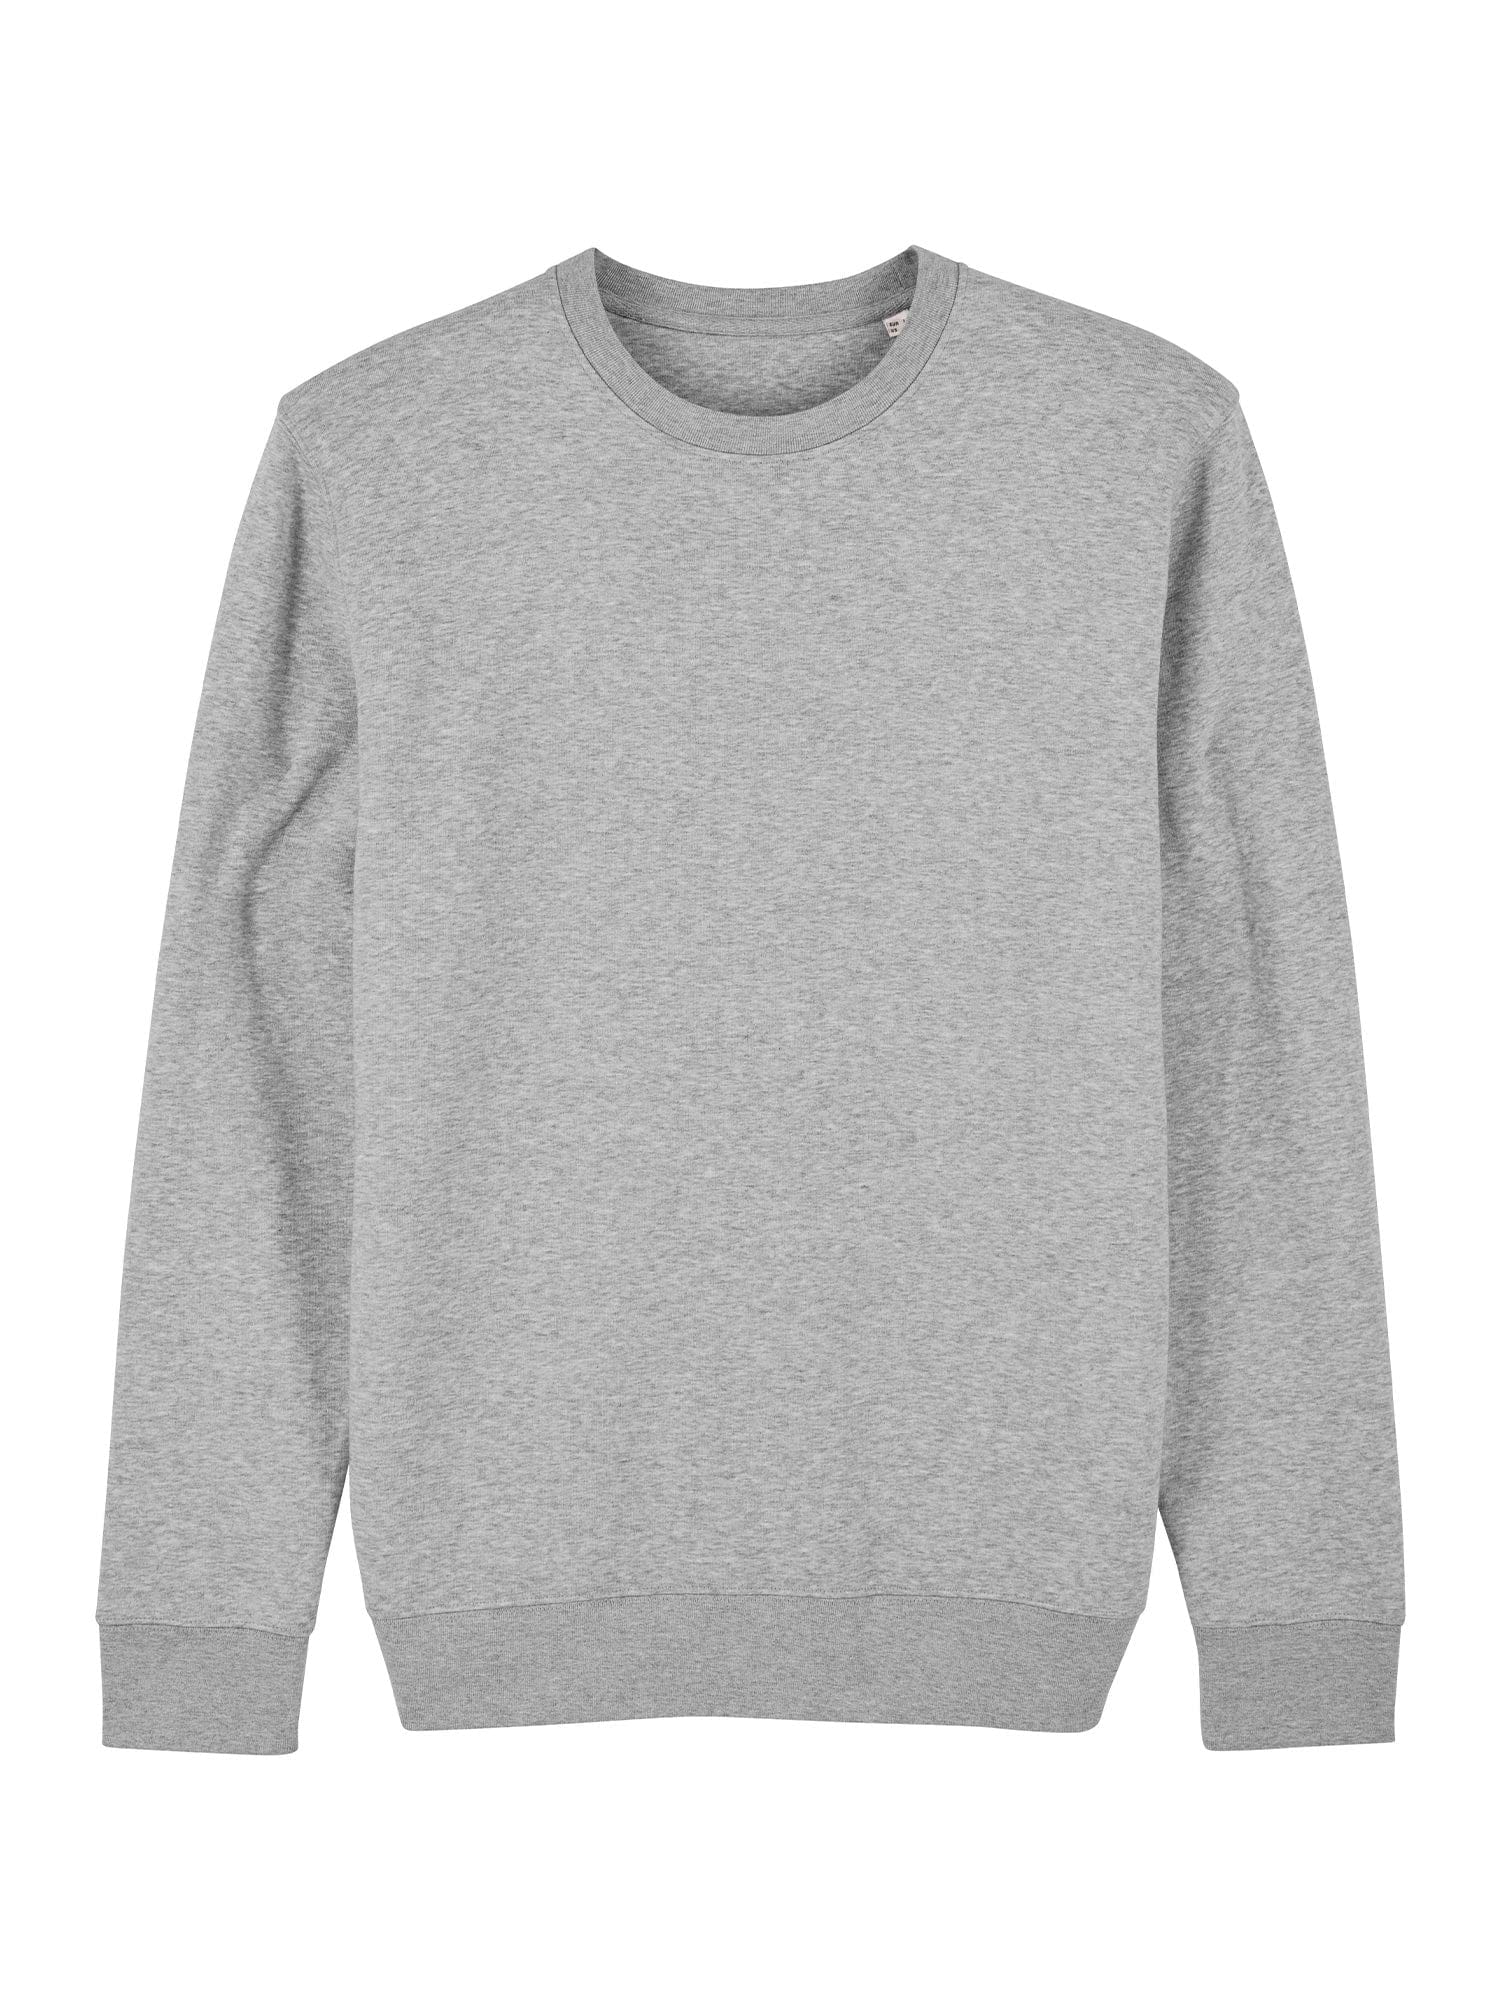 stanley stella unisex organic sweatshirt stsu823 portait heather grey flat lay